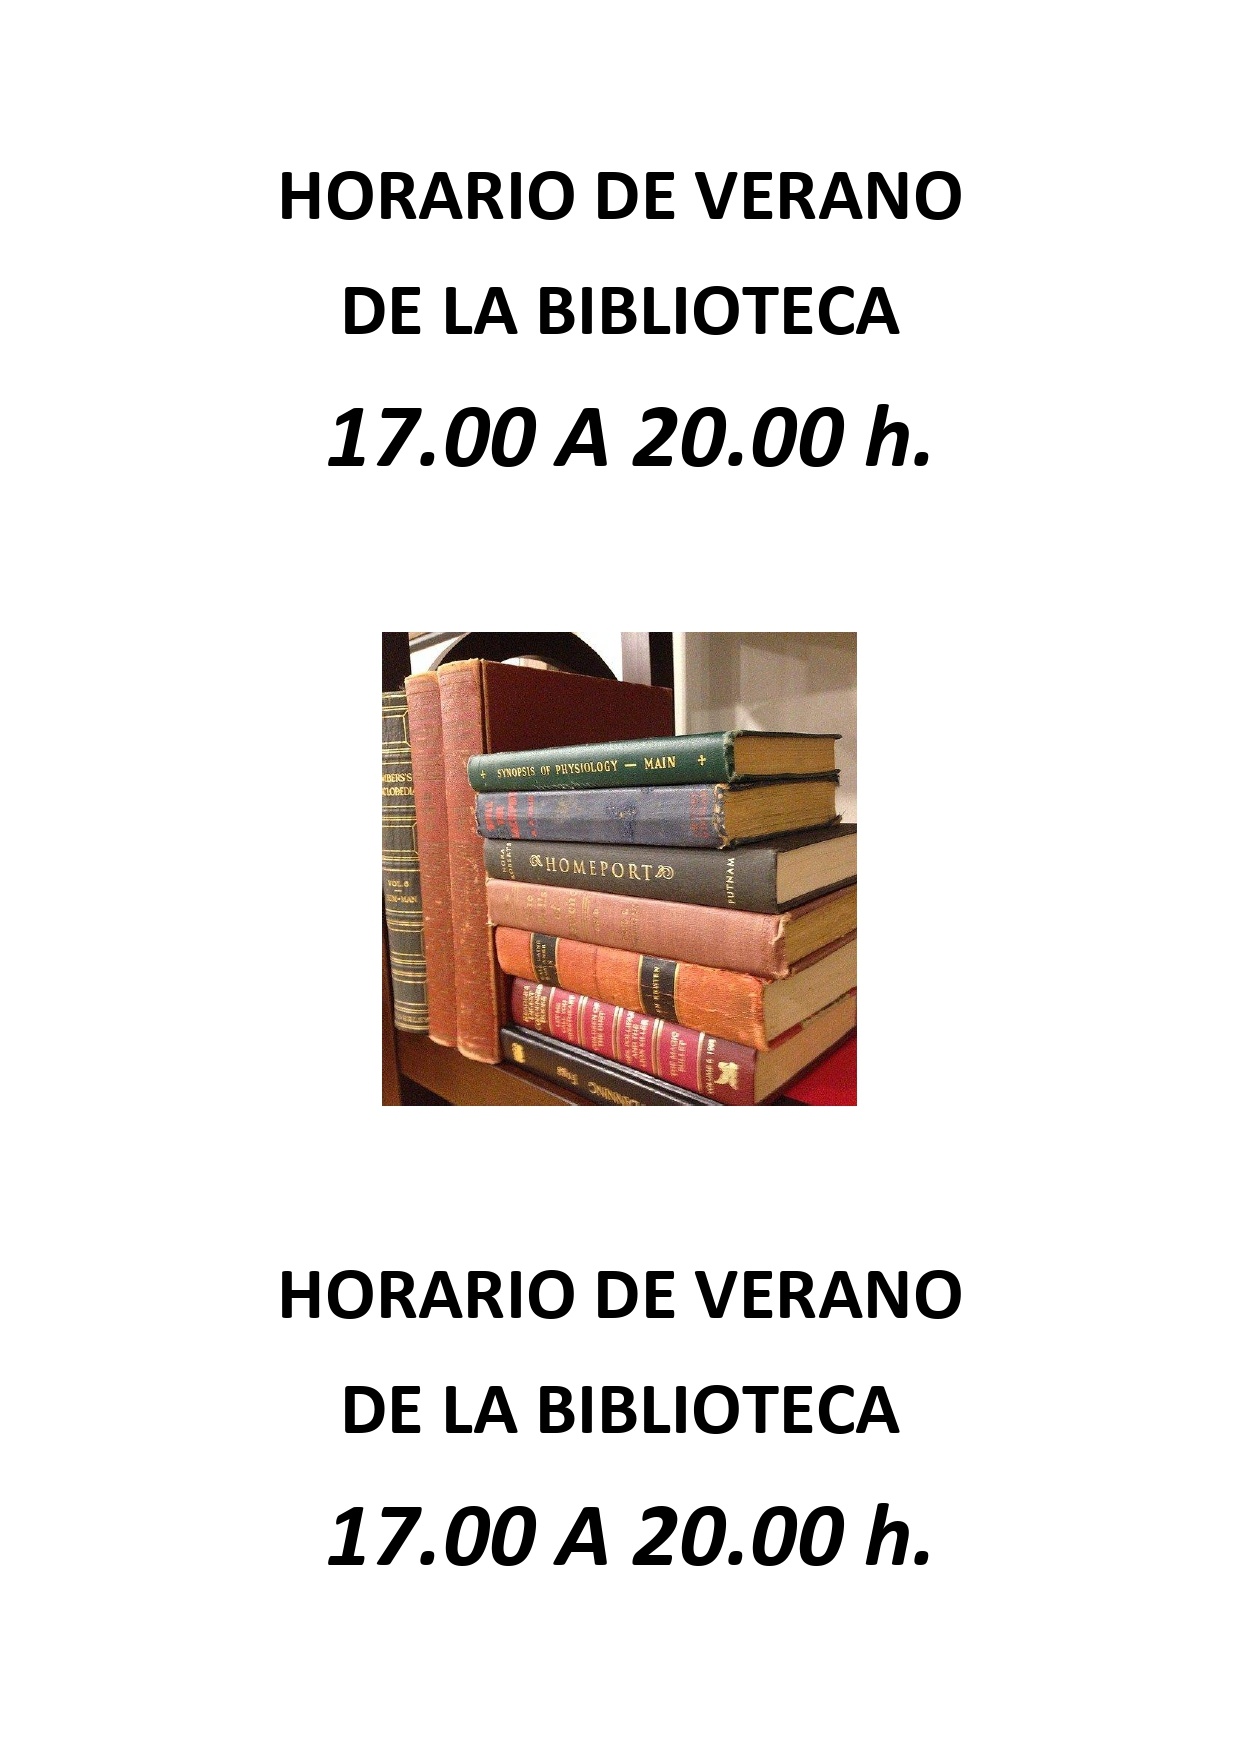 HORARIO VERANO DE LA BIBLIOTECA_page-0001 (1)